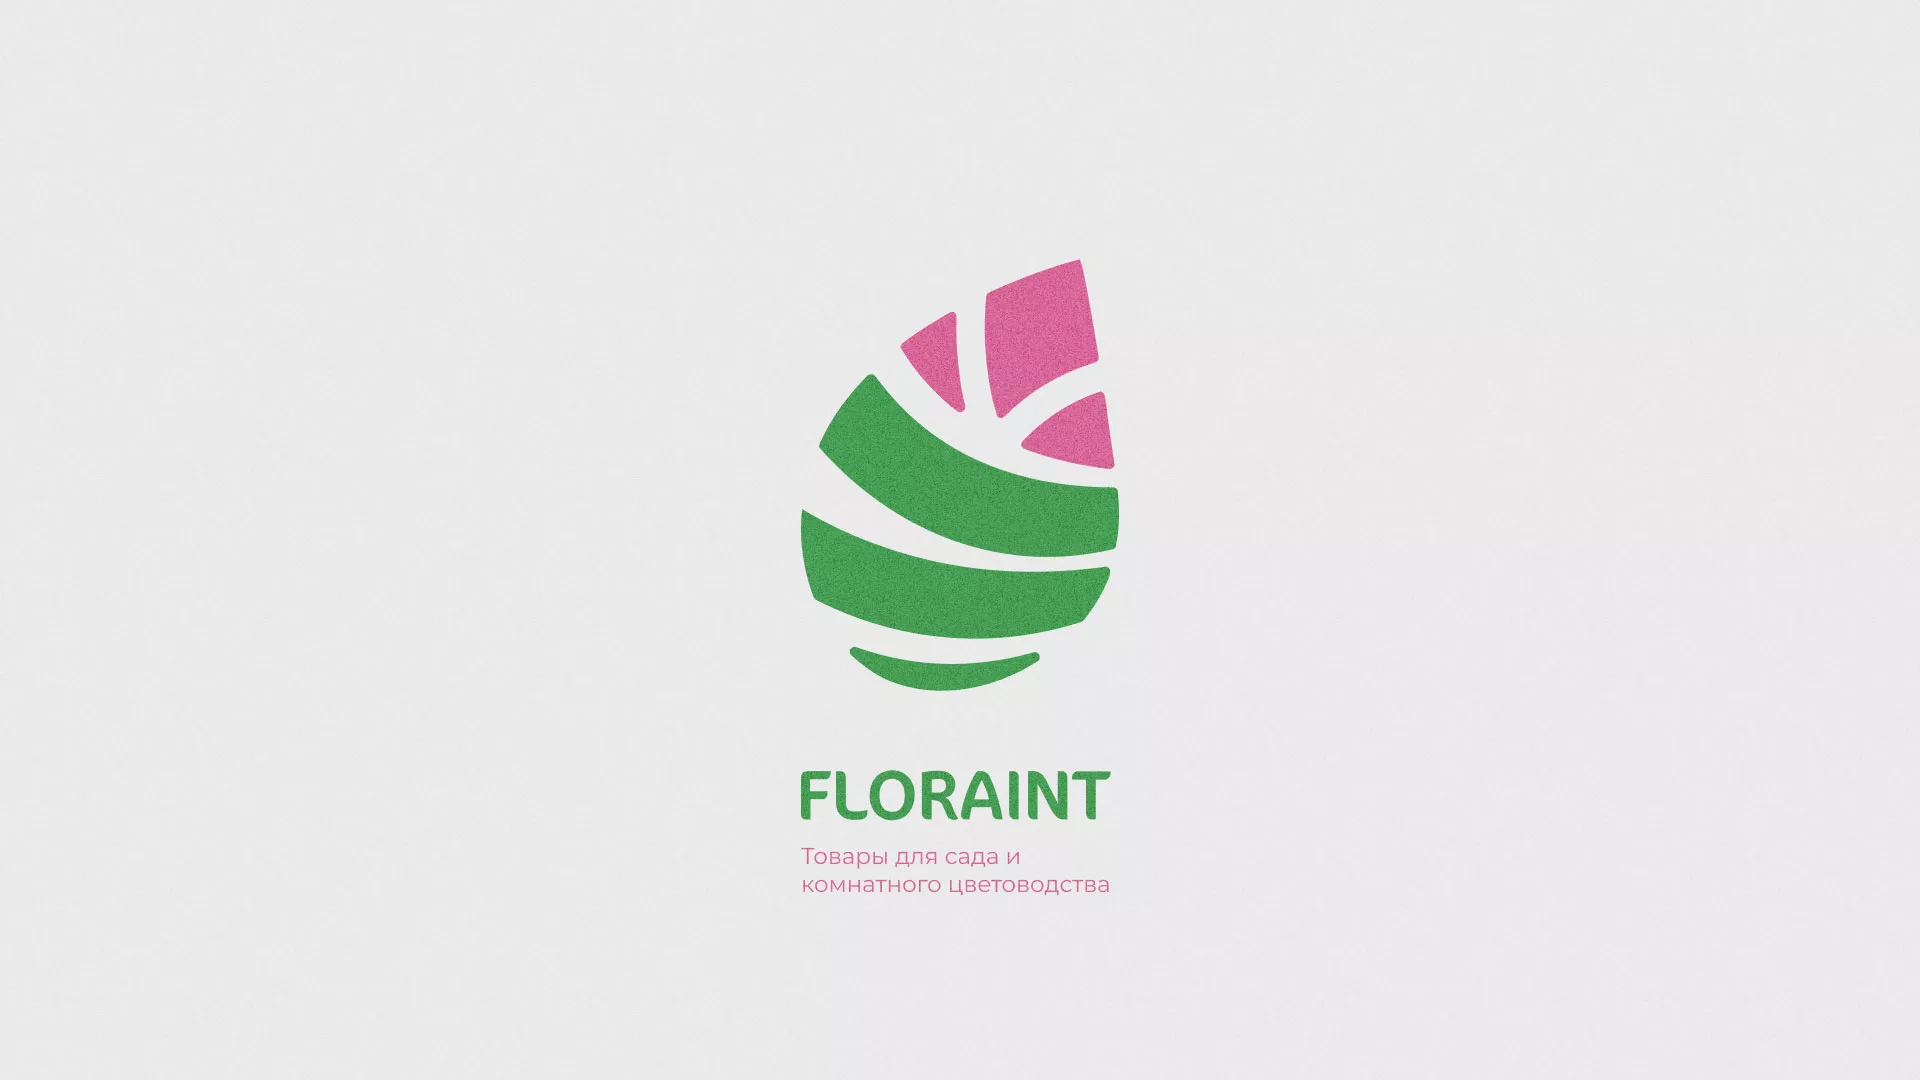 Разработка оформления профиля Instagram для магазина «Floraint» в Новомосковске